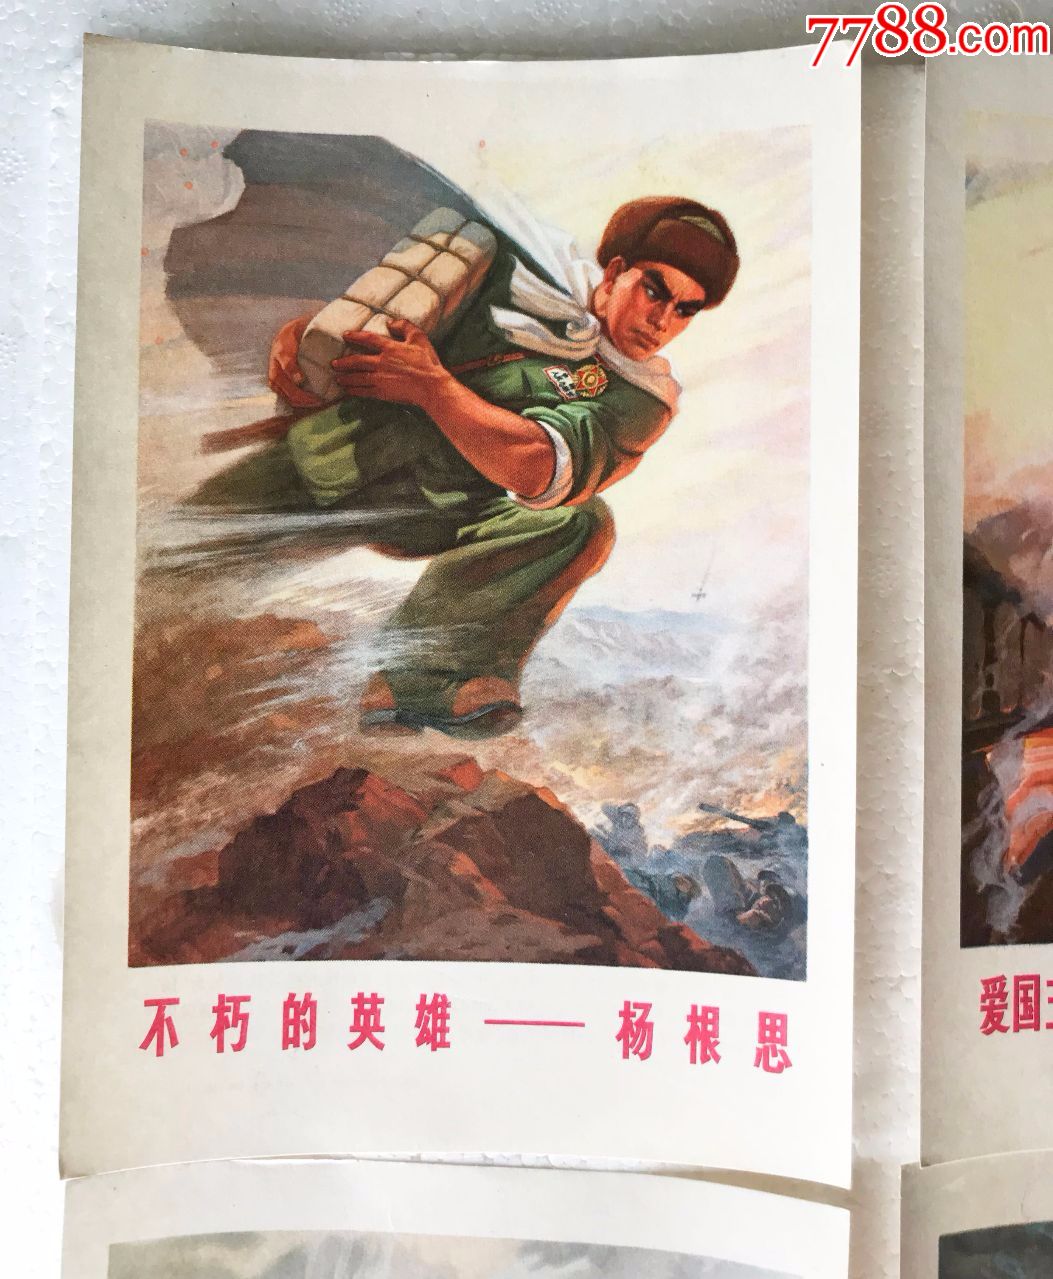 32开文革宣传画4张合拍,英雄题材:杨根思,黄继光,罗盛教,邱少云